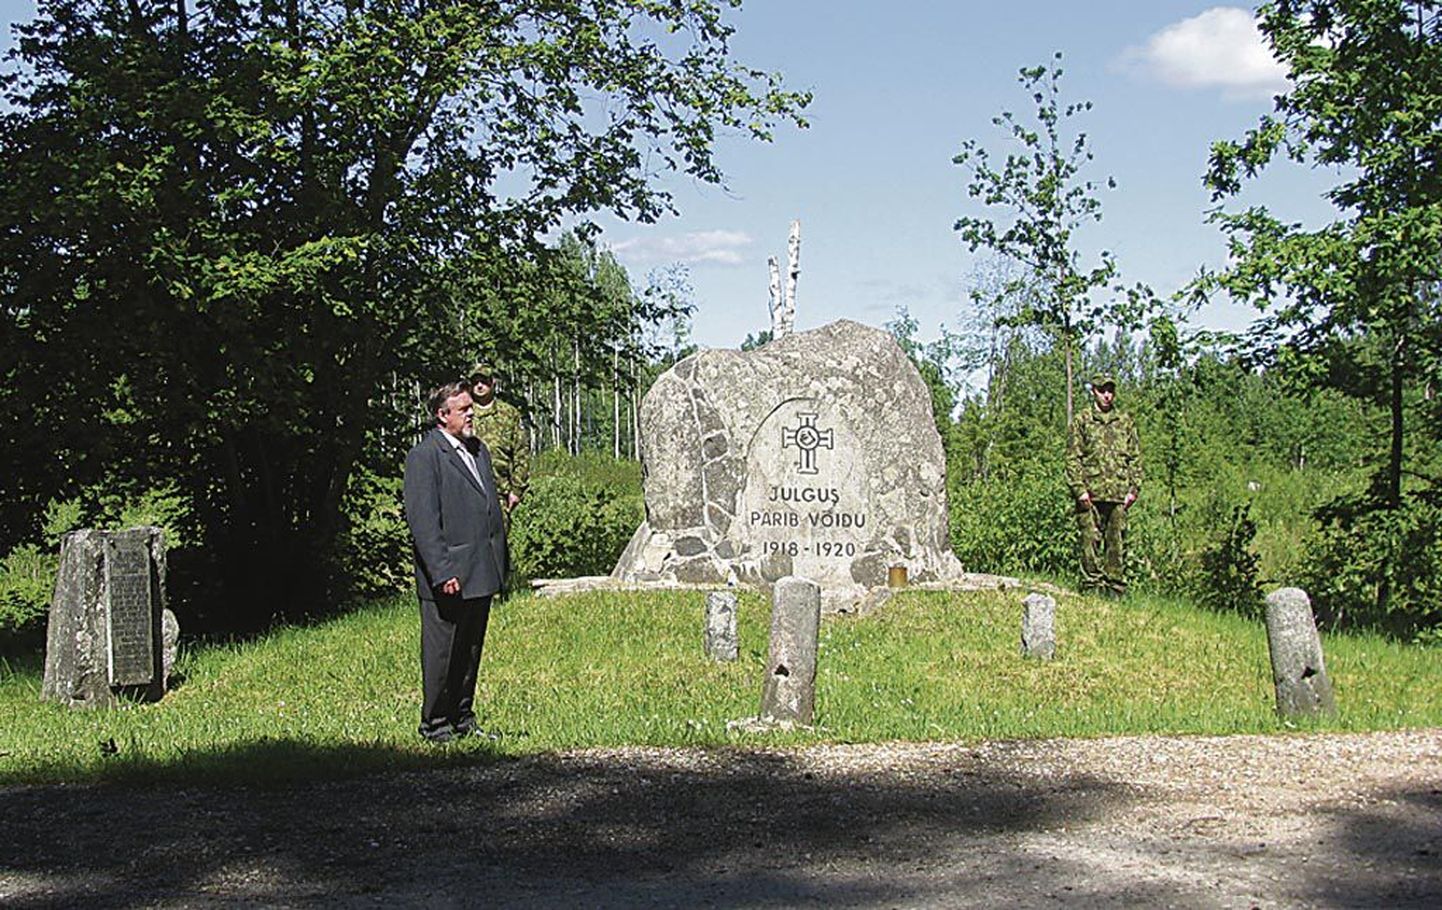 Punapargi lahingust ja mälestuskivi taastamisest rääkis Olev Paukson 23. juuni hommikul infotahvli avamisel.